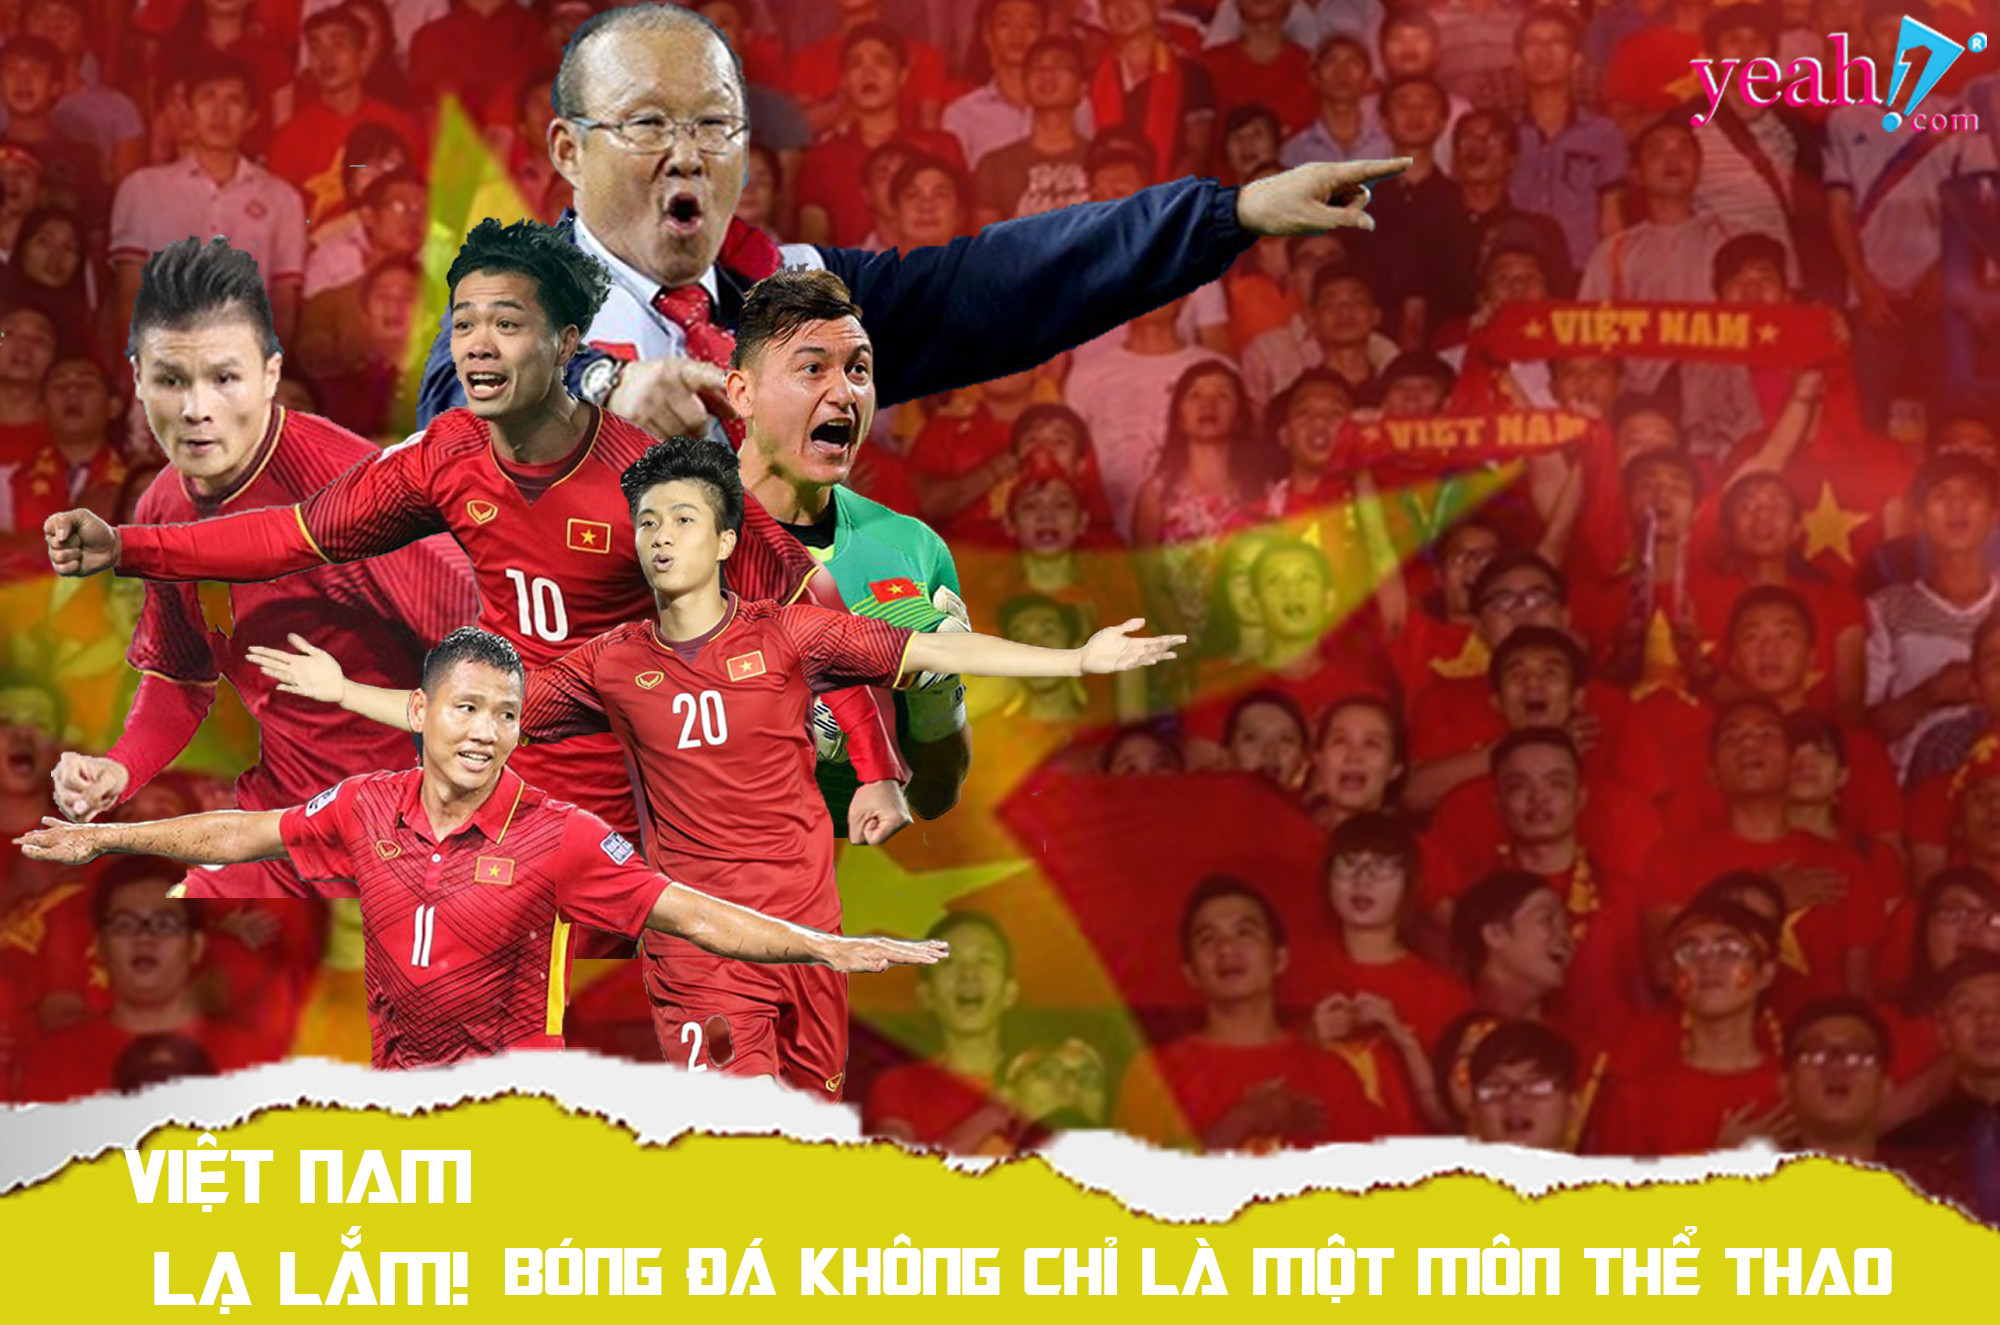 Việt Nam lạ lắm! Bóng đá không chỉ là một môn thể thao - Yeah1 News